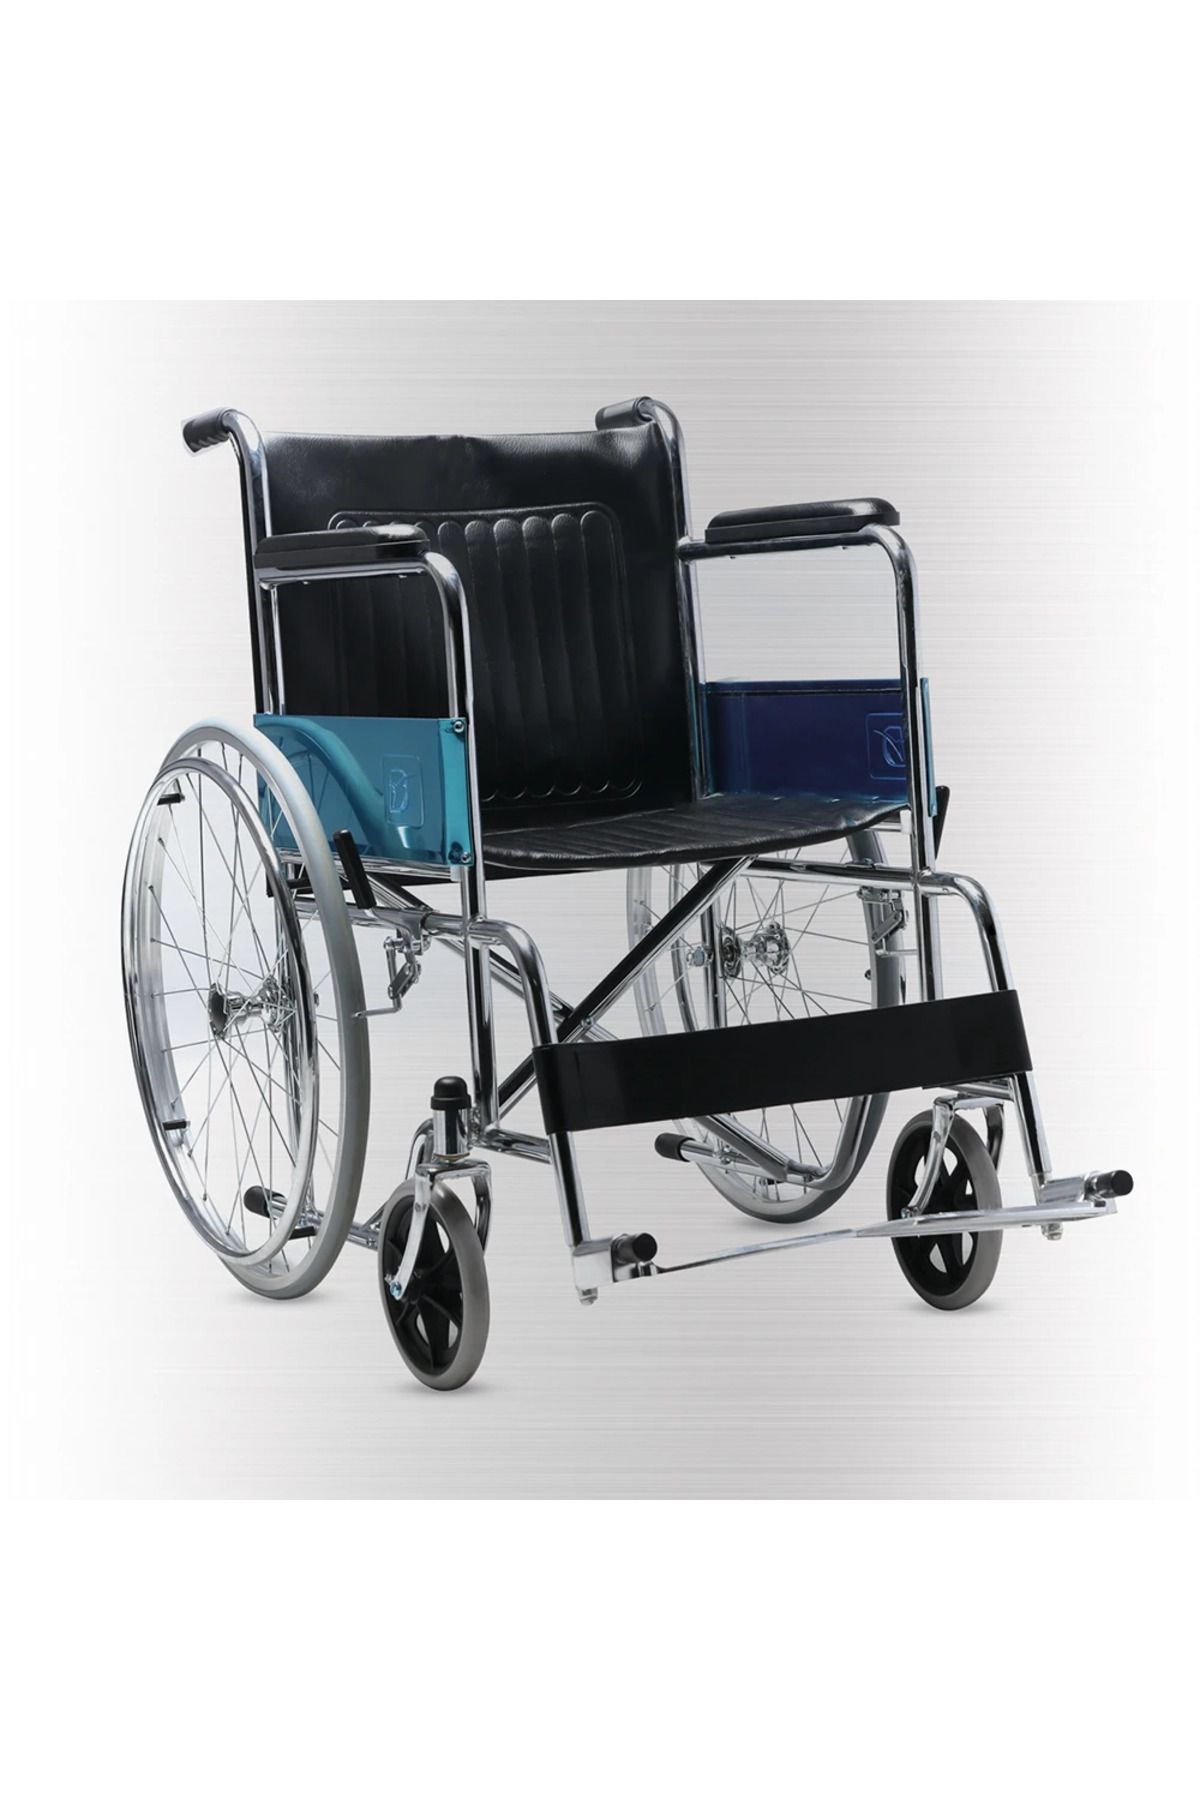 BGM Kromajlı Tekerlekli Sandalye Katlanır Dolgu Teker Yüksek Kalite Tekerlekli Sandalye